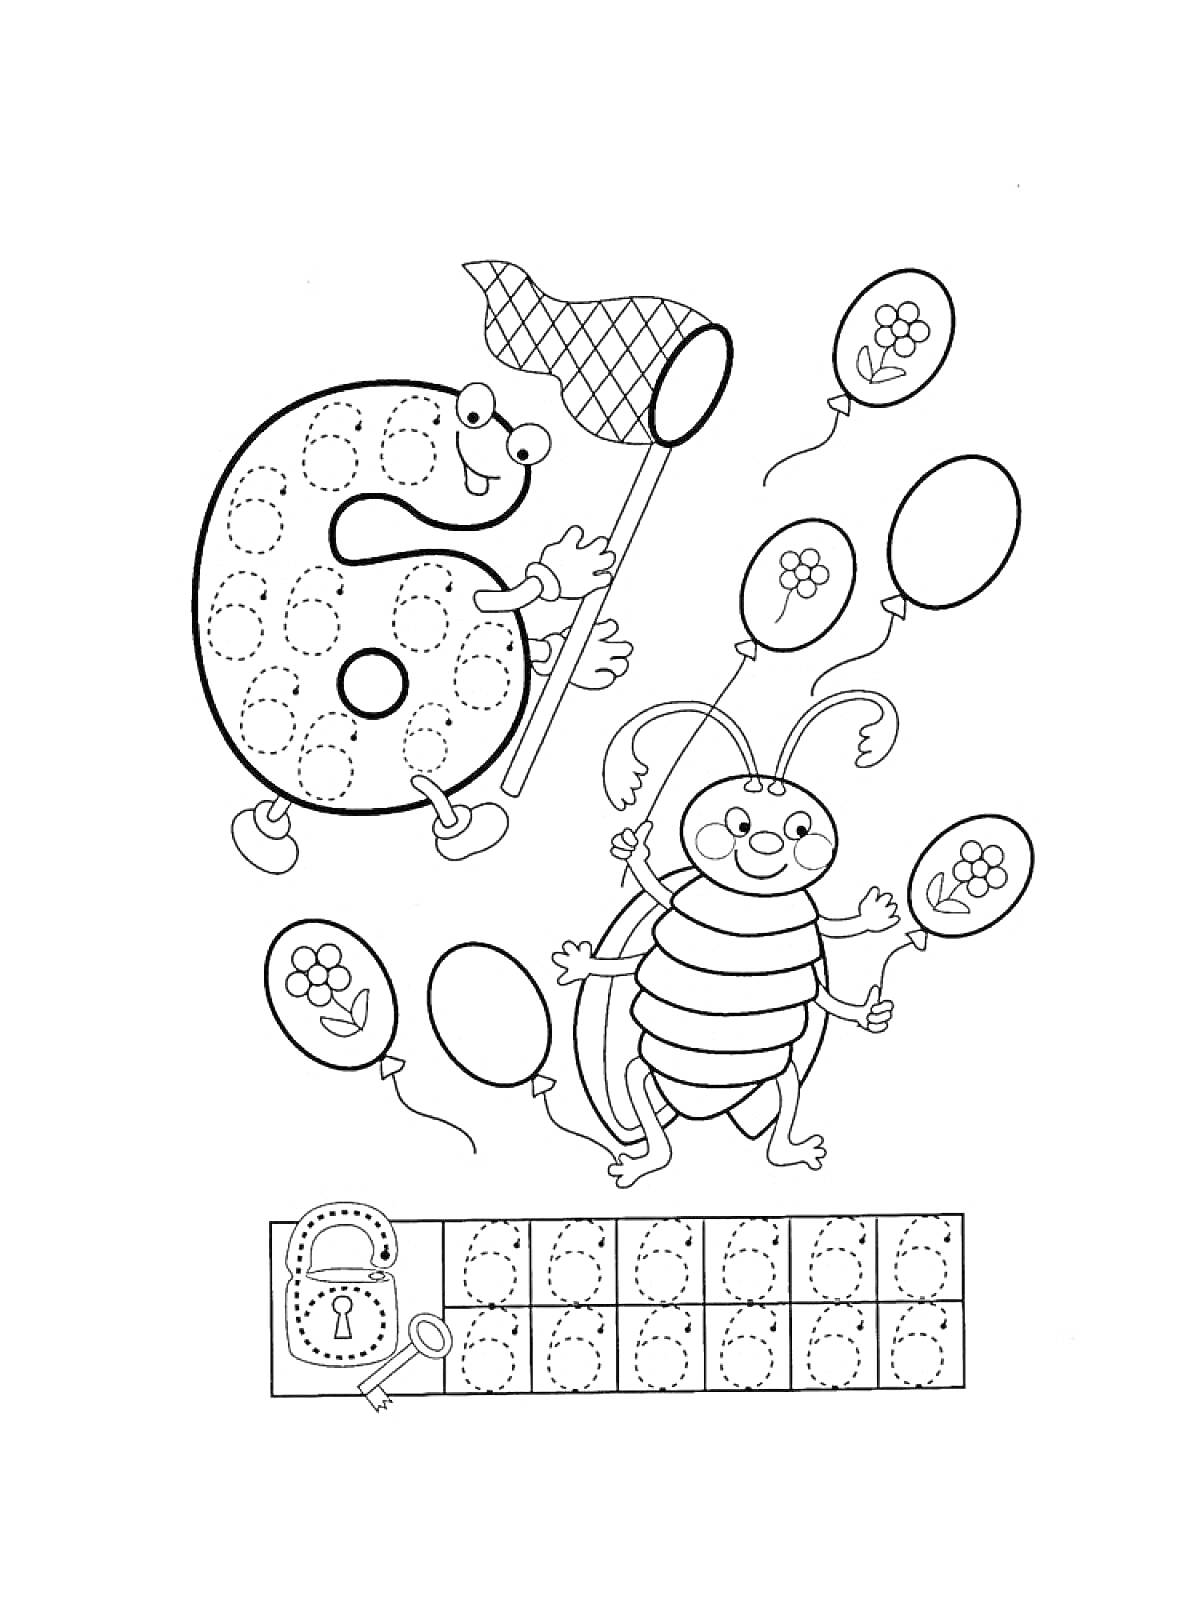 Раскраска Раскраска с цифрой 6, божьей коровкой, развивающей сеткой для перерисовки цифр и воздушными шарами